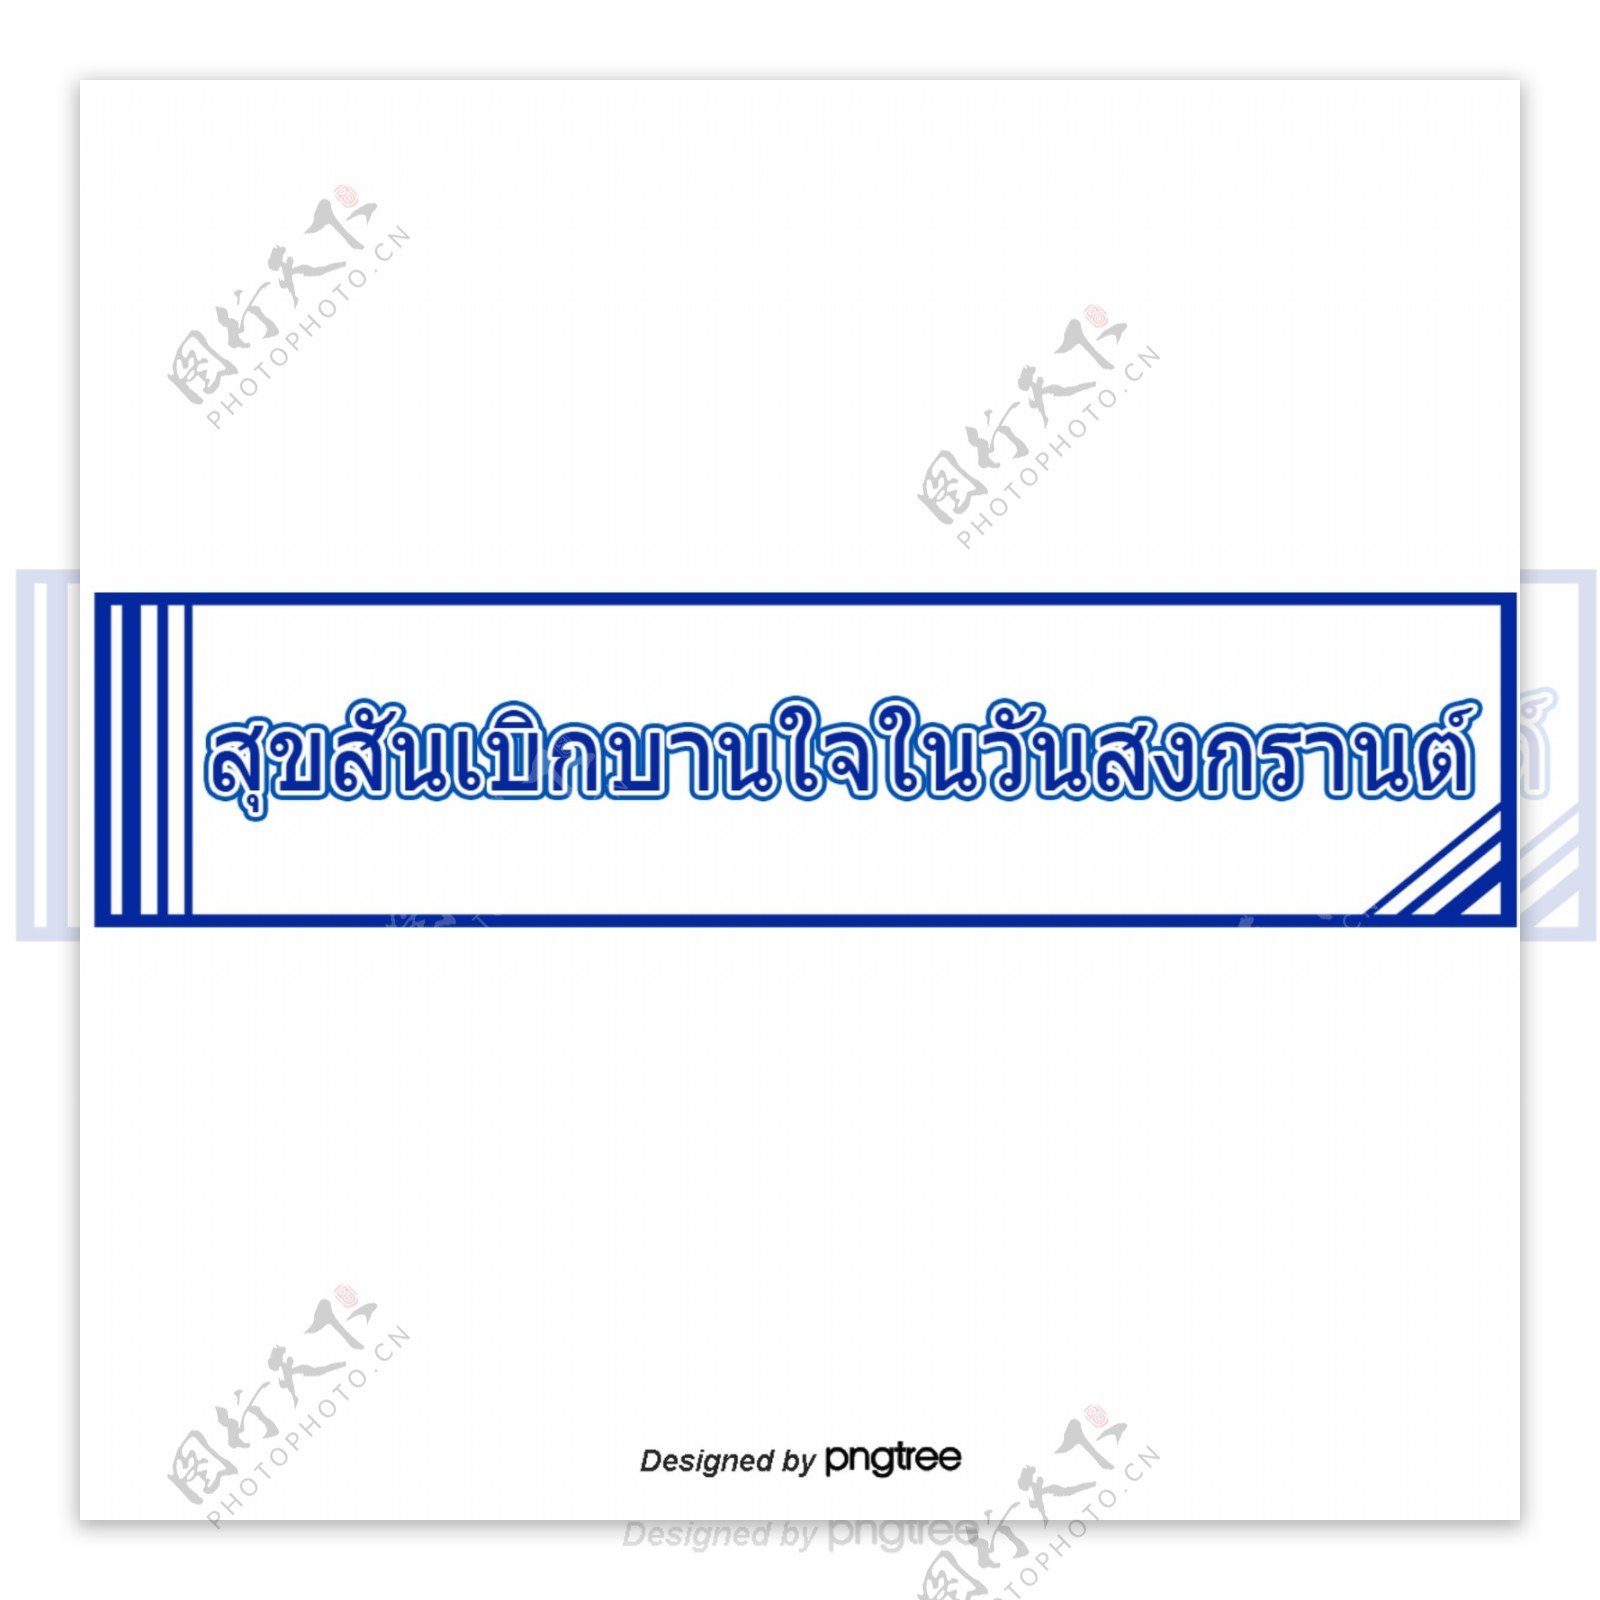 泰国字母的字体在宋干节快乐快乐的深蓝色矩形